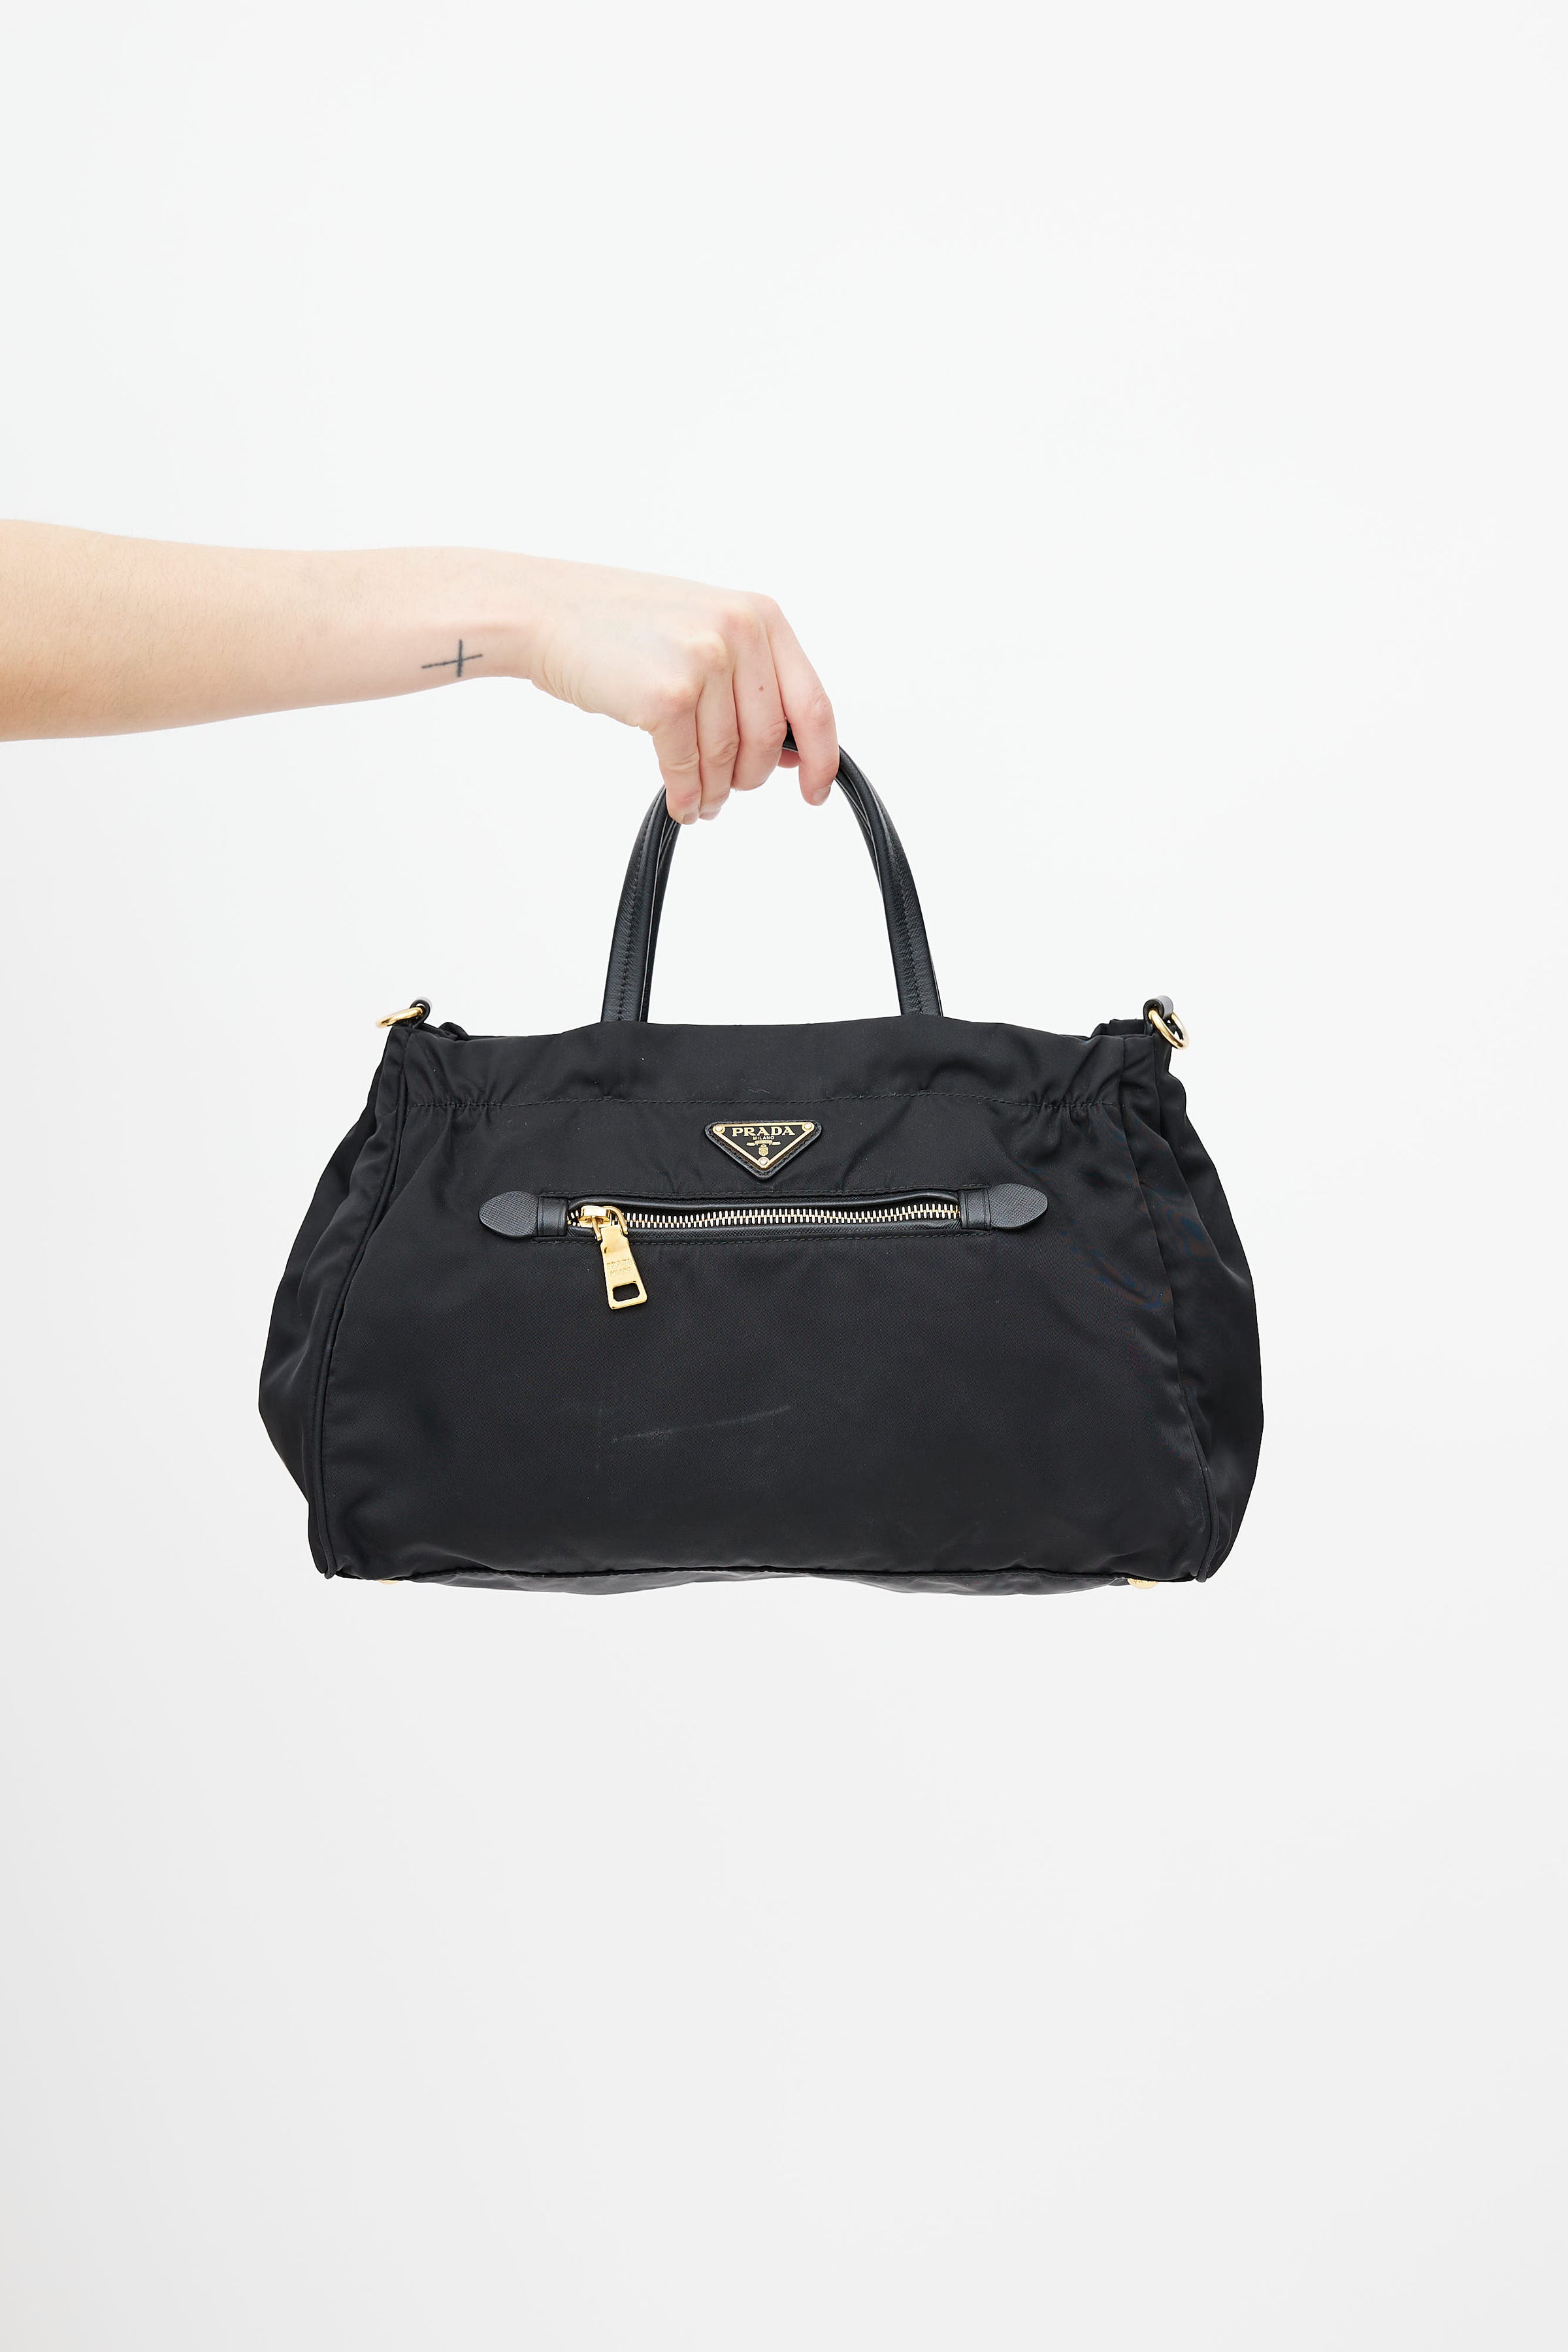 Prada Tote Bag Tessuto Saffiano Black in Nylon with Gold-tone - US